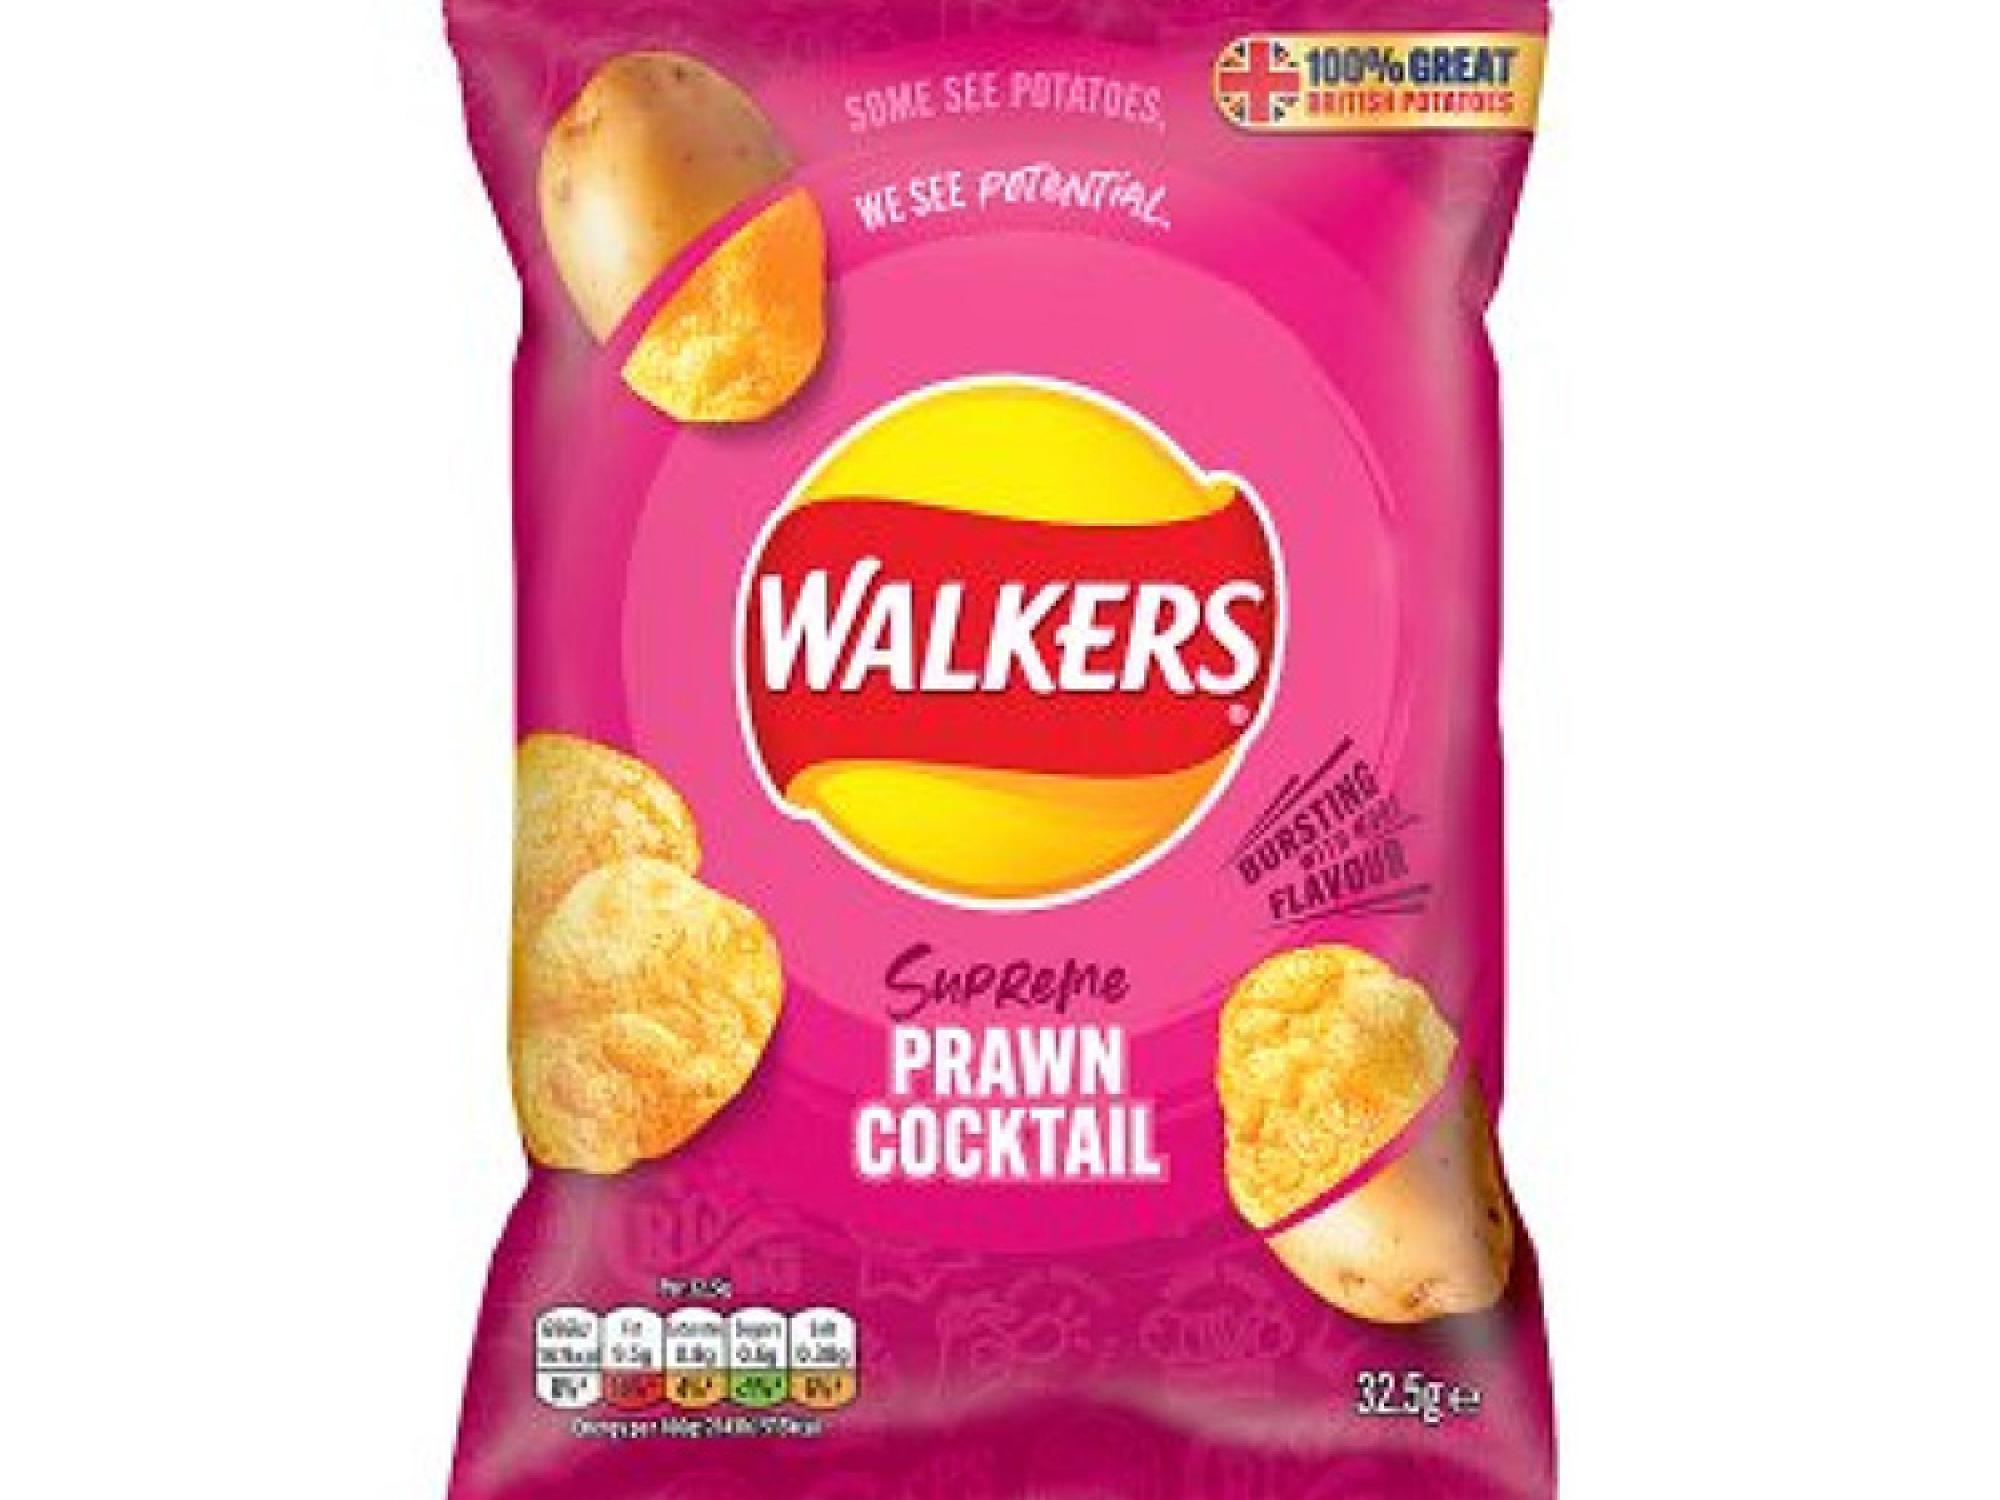 Walkers prawn cocktail